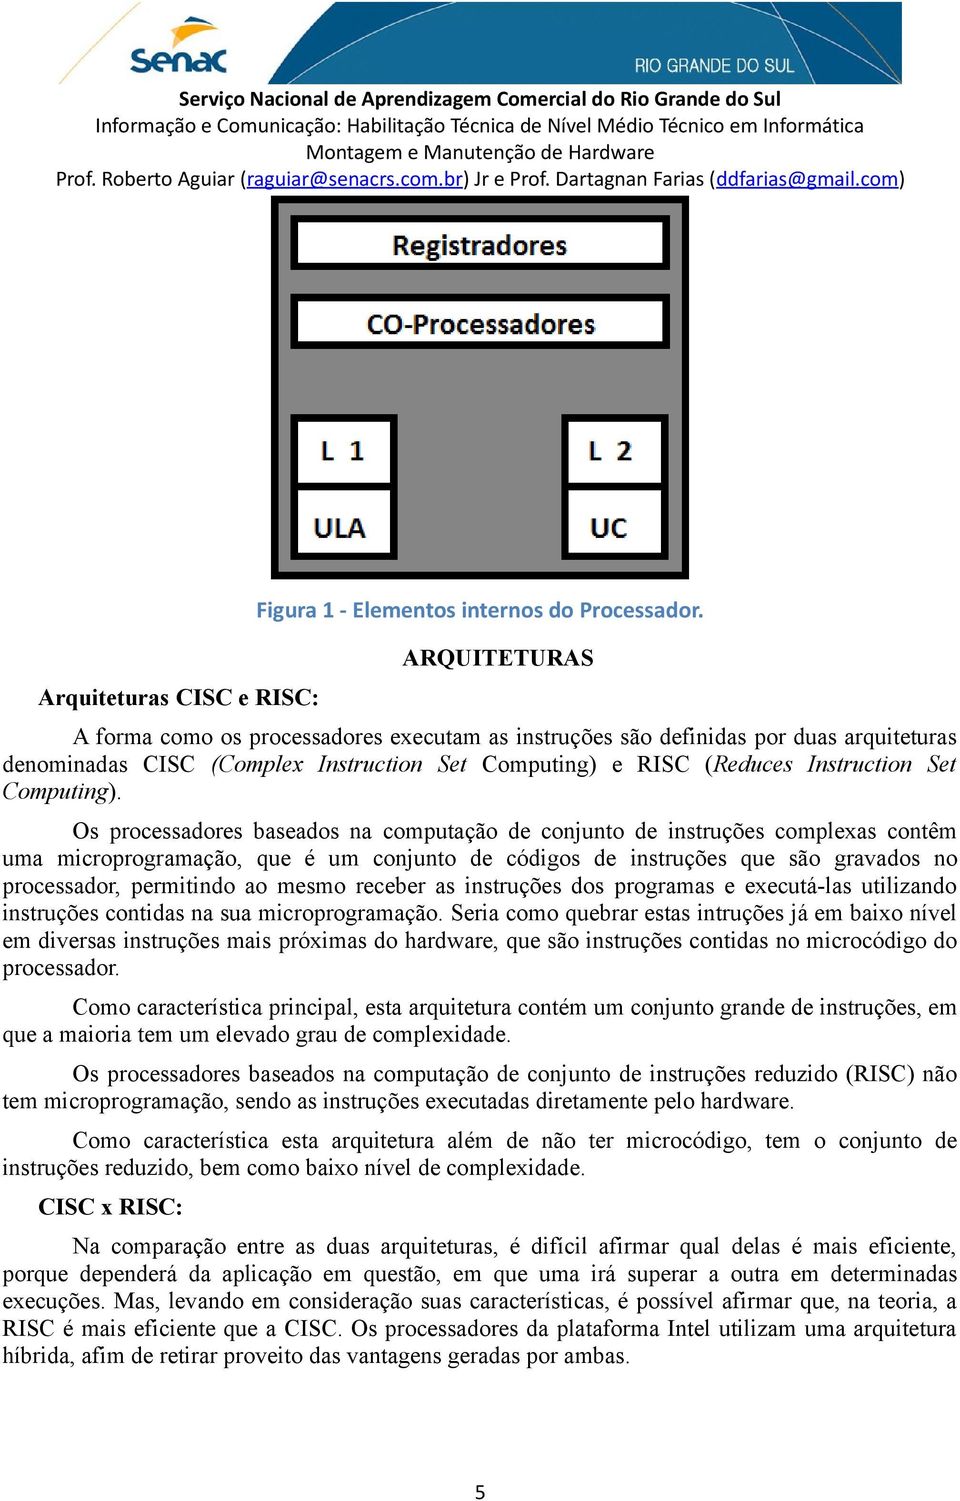 Os processadores baseados na computação de conjunto de instruções complexas contêm uma microprogramação, que é um conjunto de códigos de instruções que são gravados no processador, permitindo ao